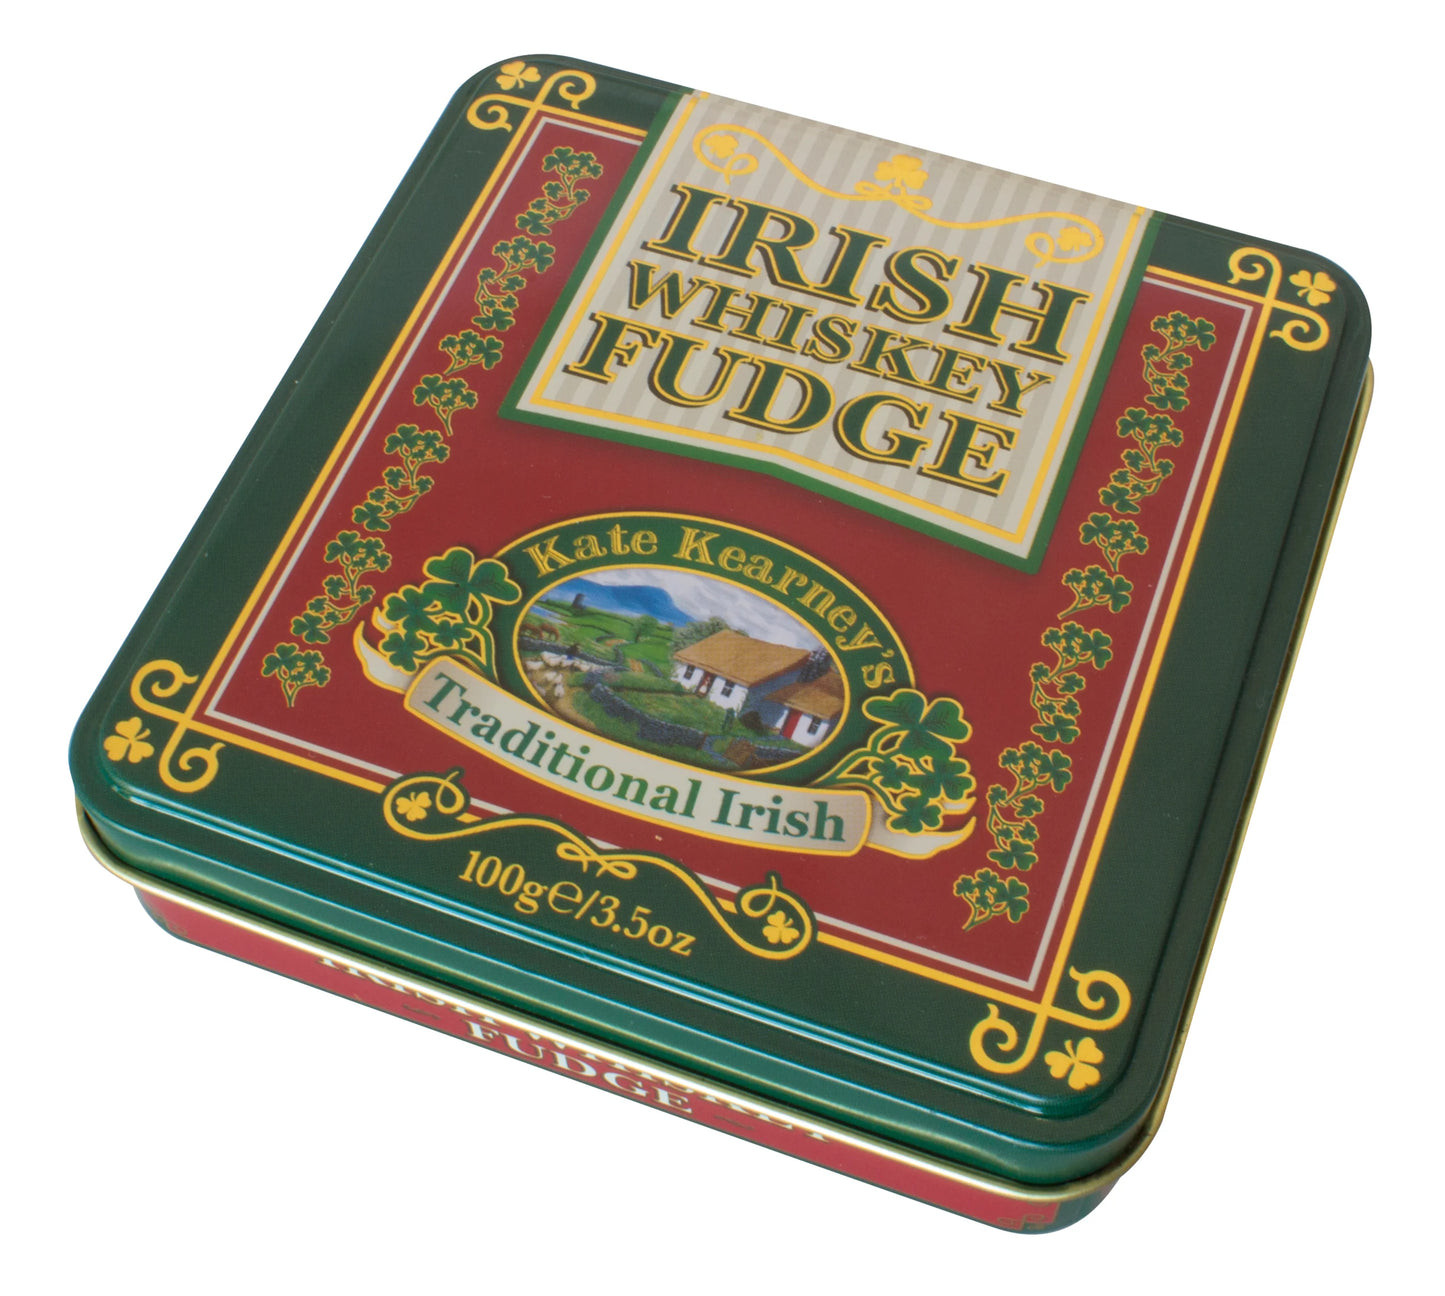 Irish Whiskey Fudge